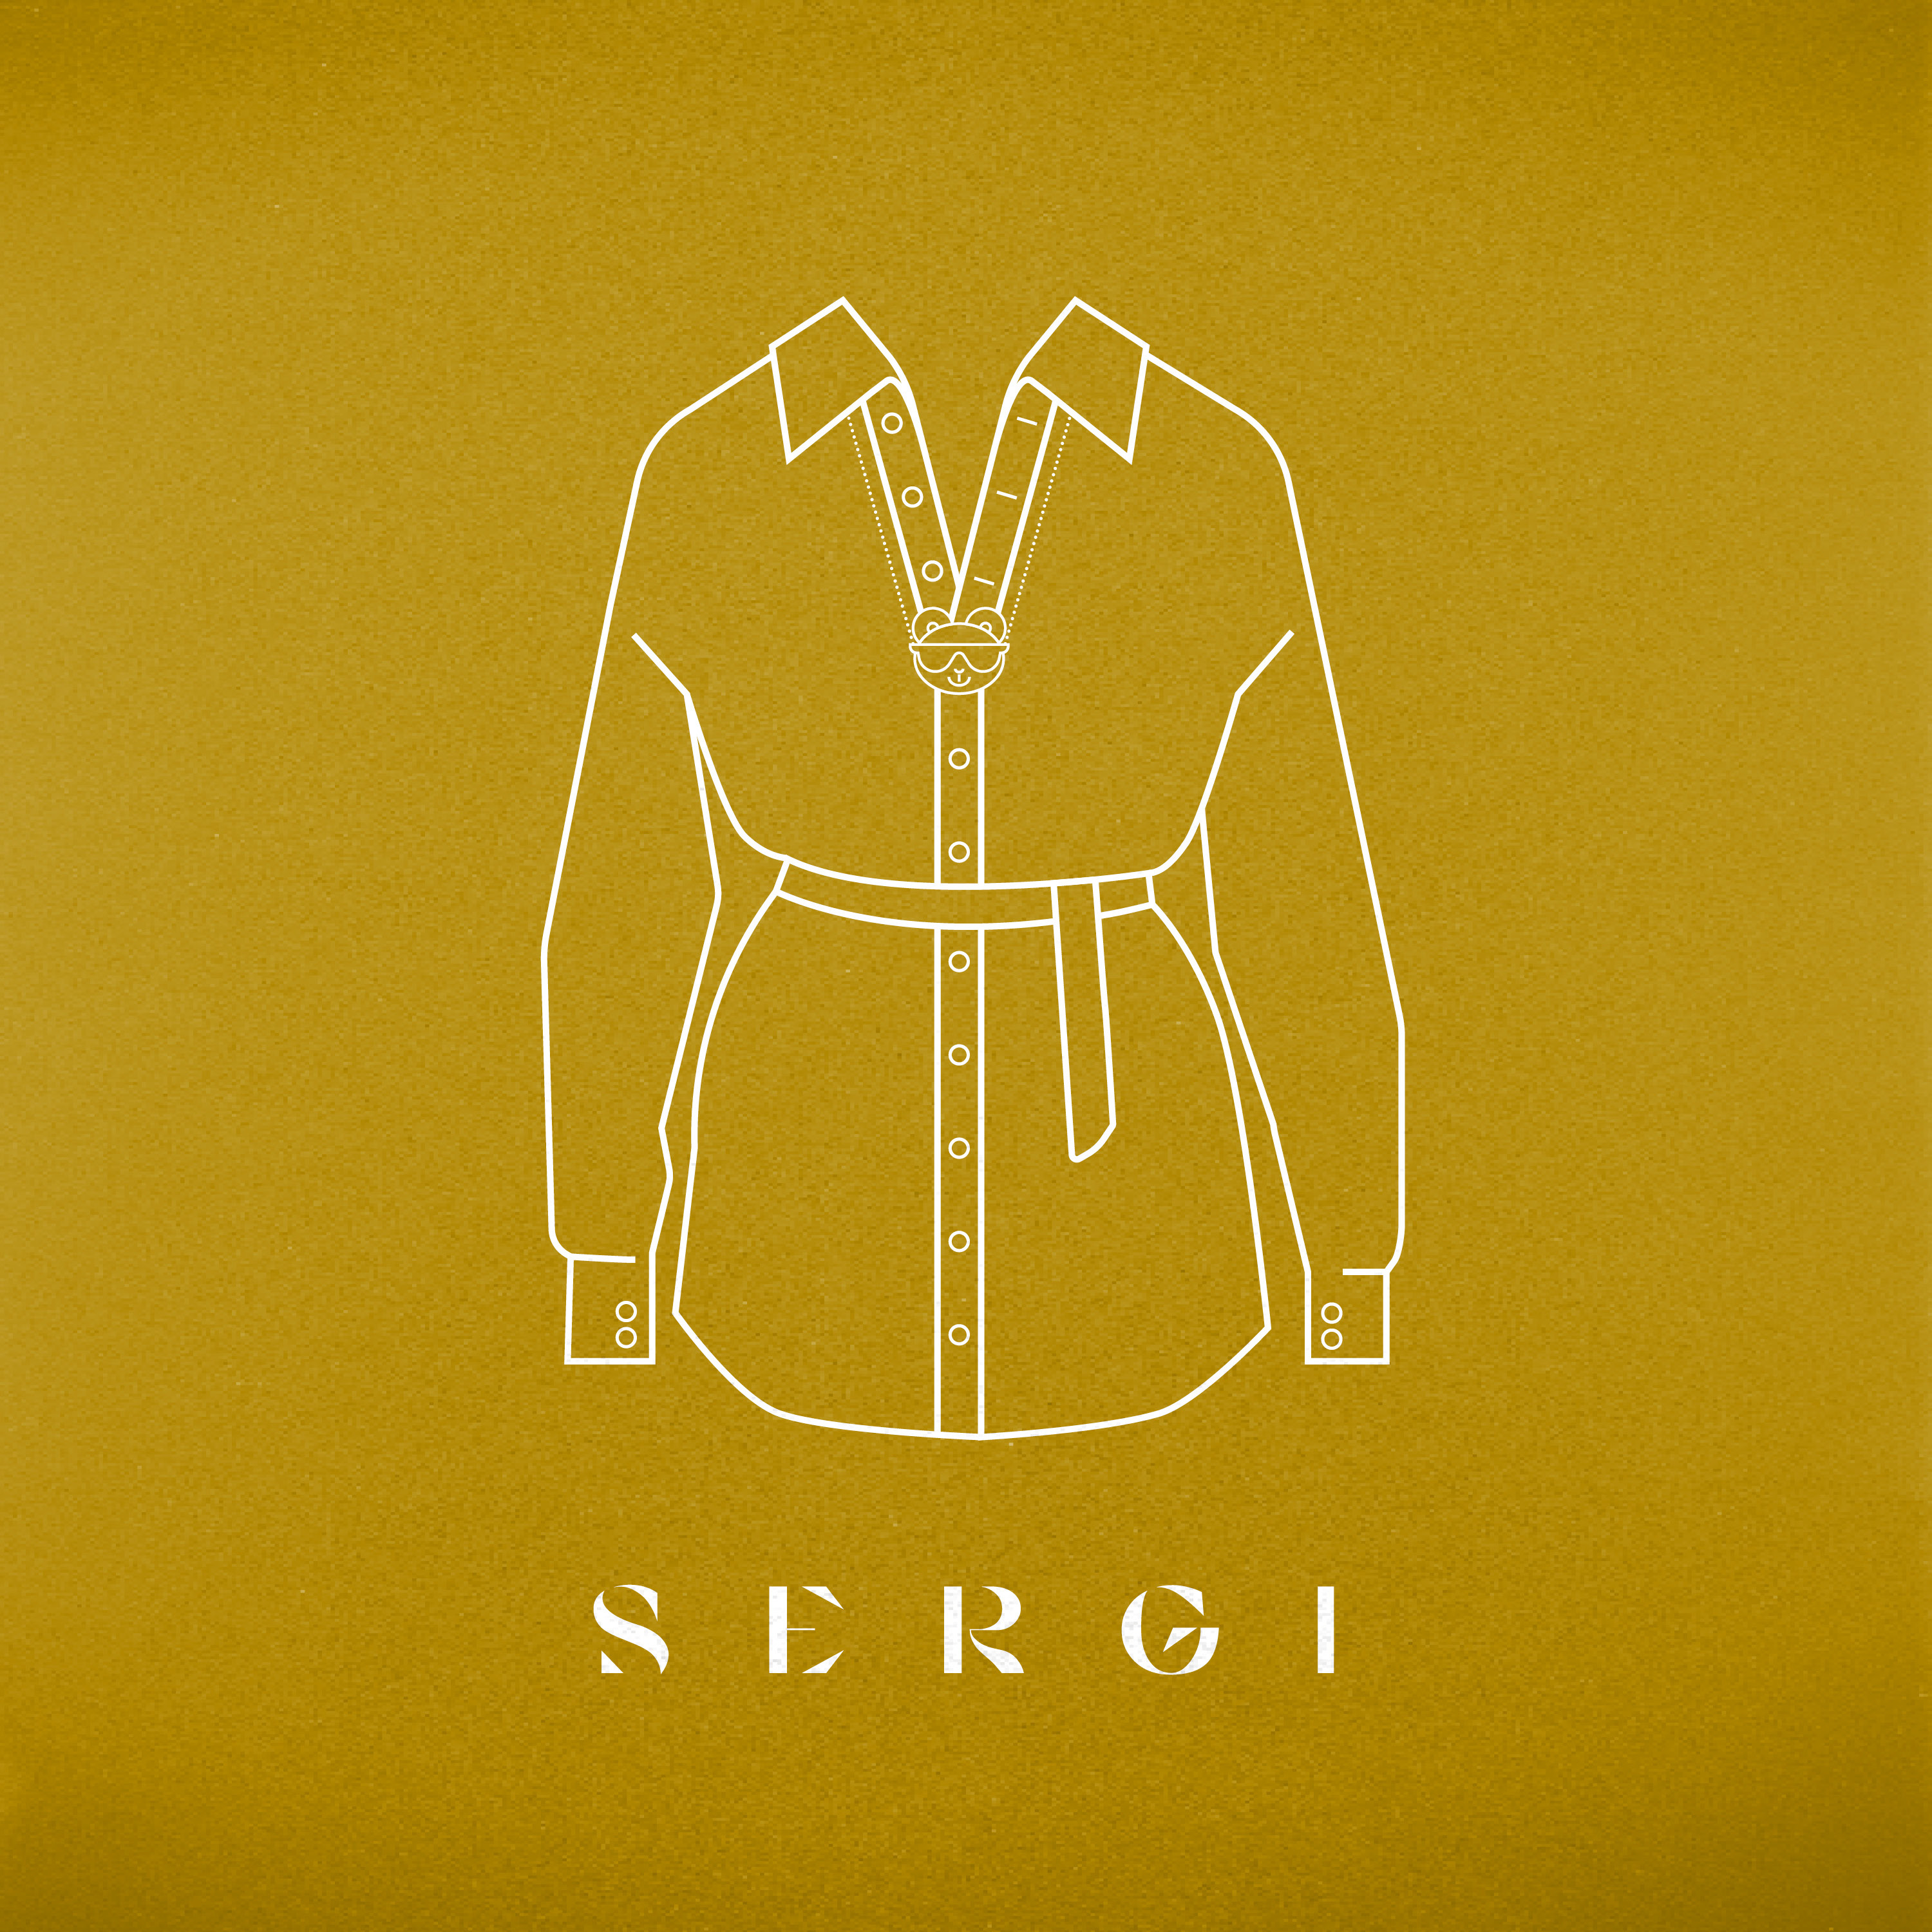 SERGI estrena nuevo sencillo “El Vestido”